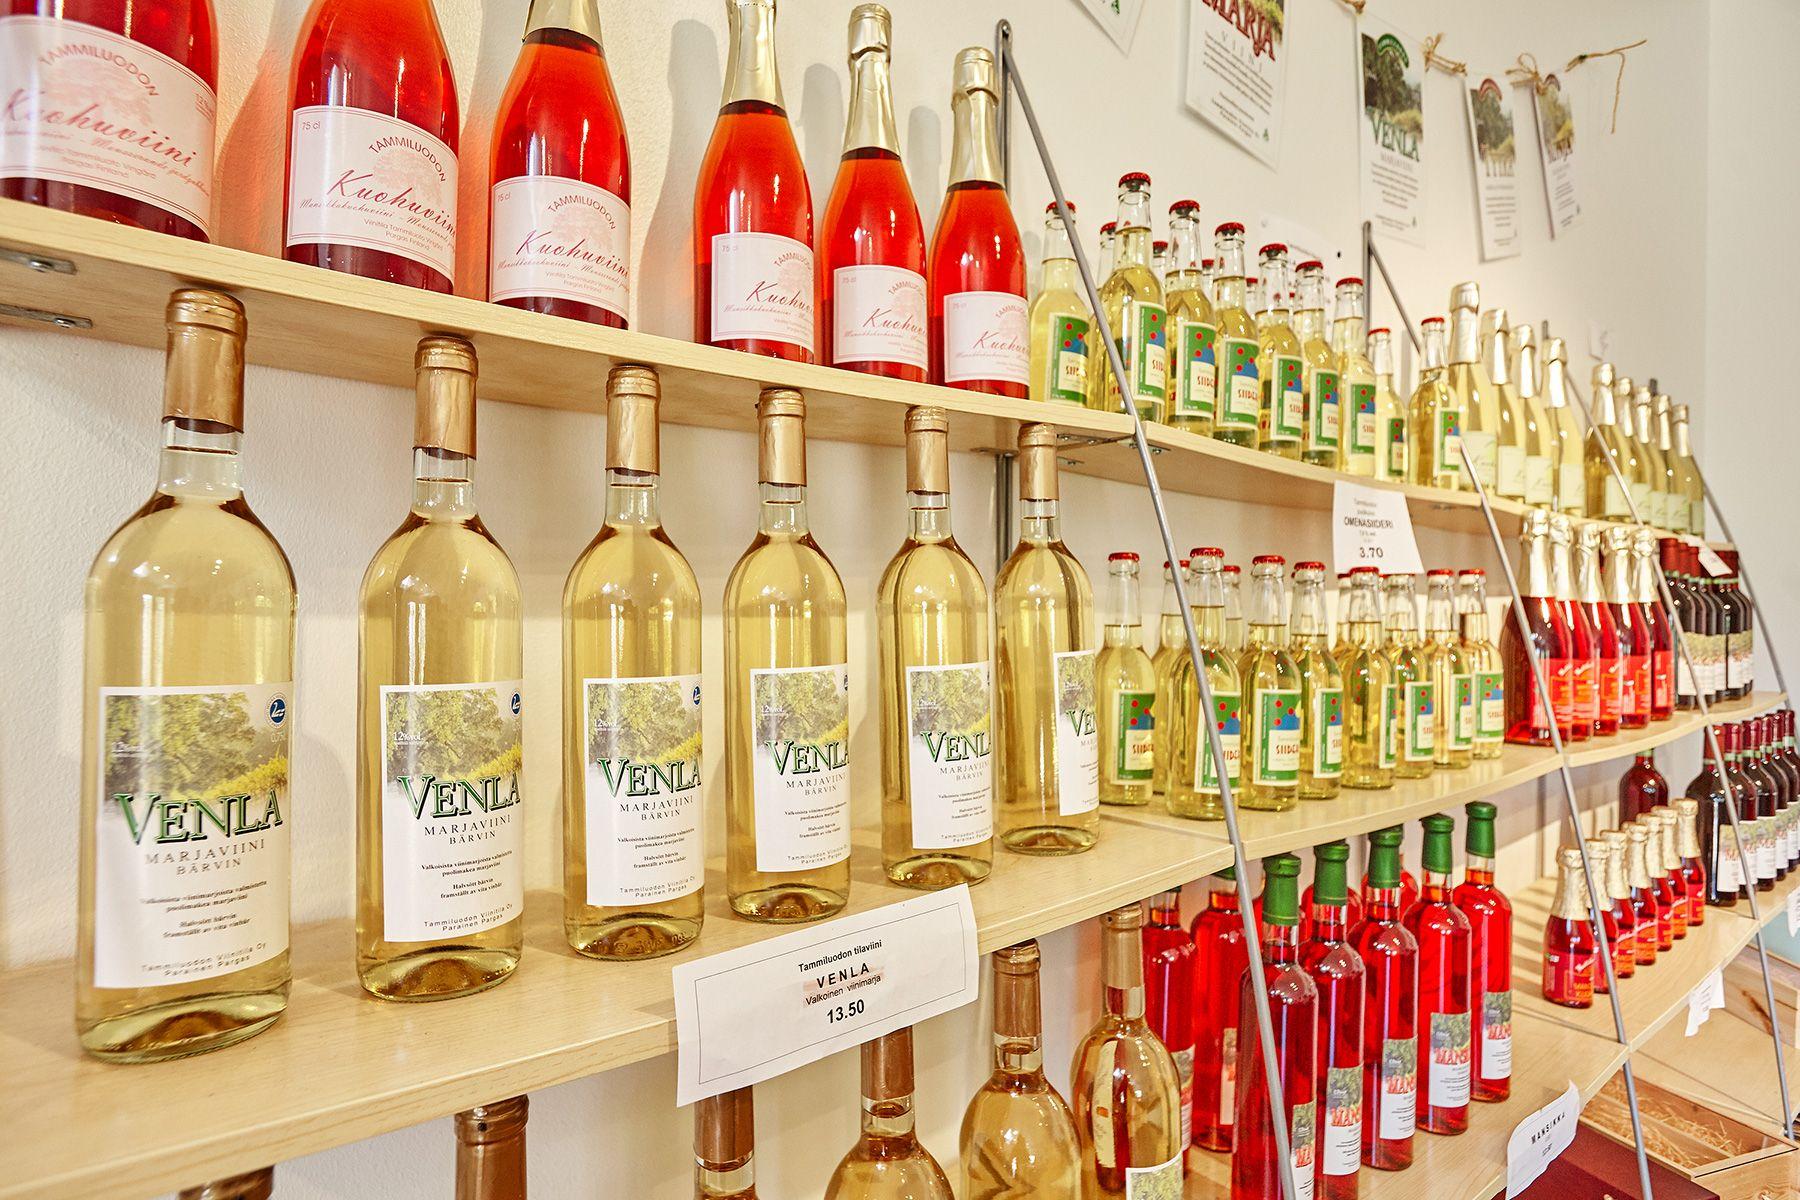 Tammiluodon Viinitilan tuotteita pitkässä kaksikerroksisessa hyllyssä. Pulloissa on punaista ja keltaista juomaa.